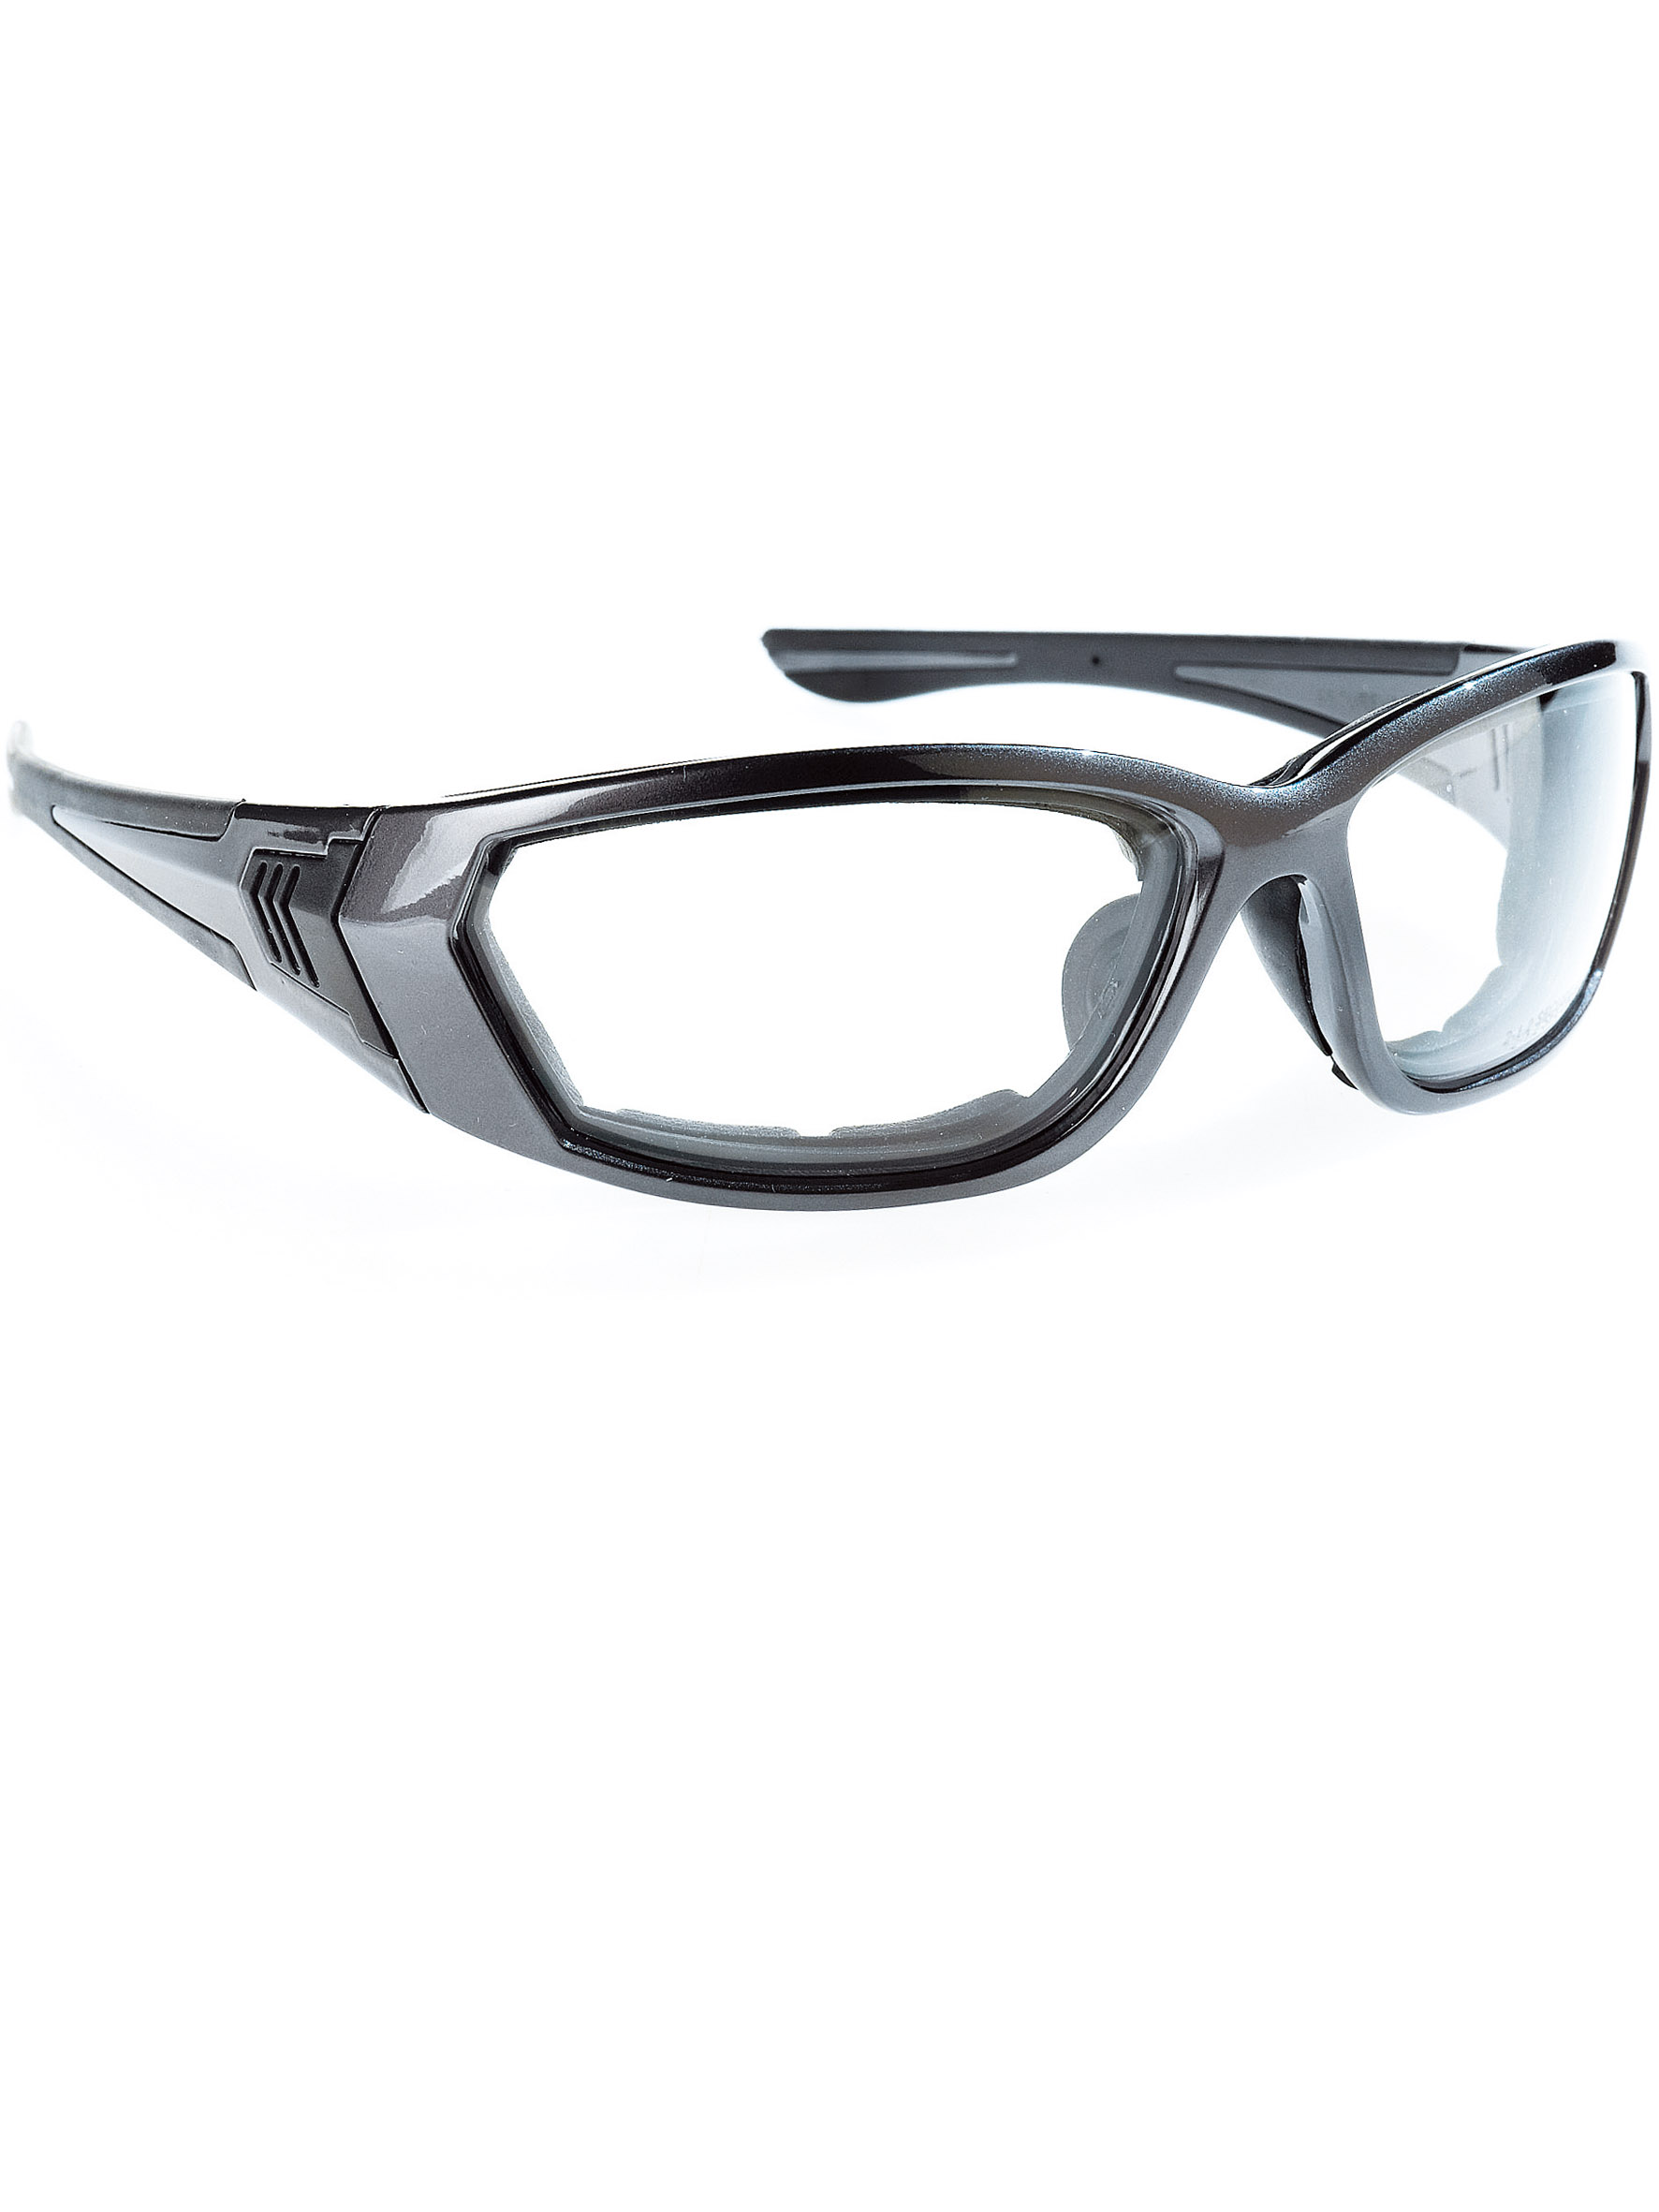 Article - Cordon élastique plat pour lunette. 28 cm x 1,00 cm.